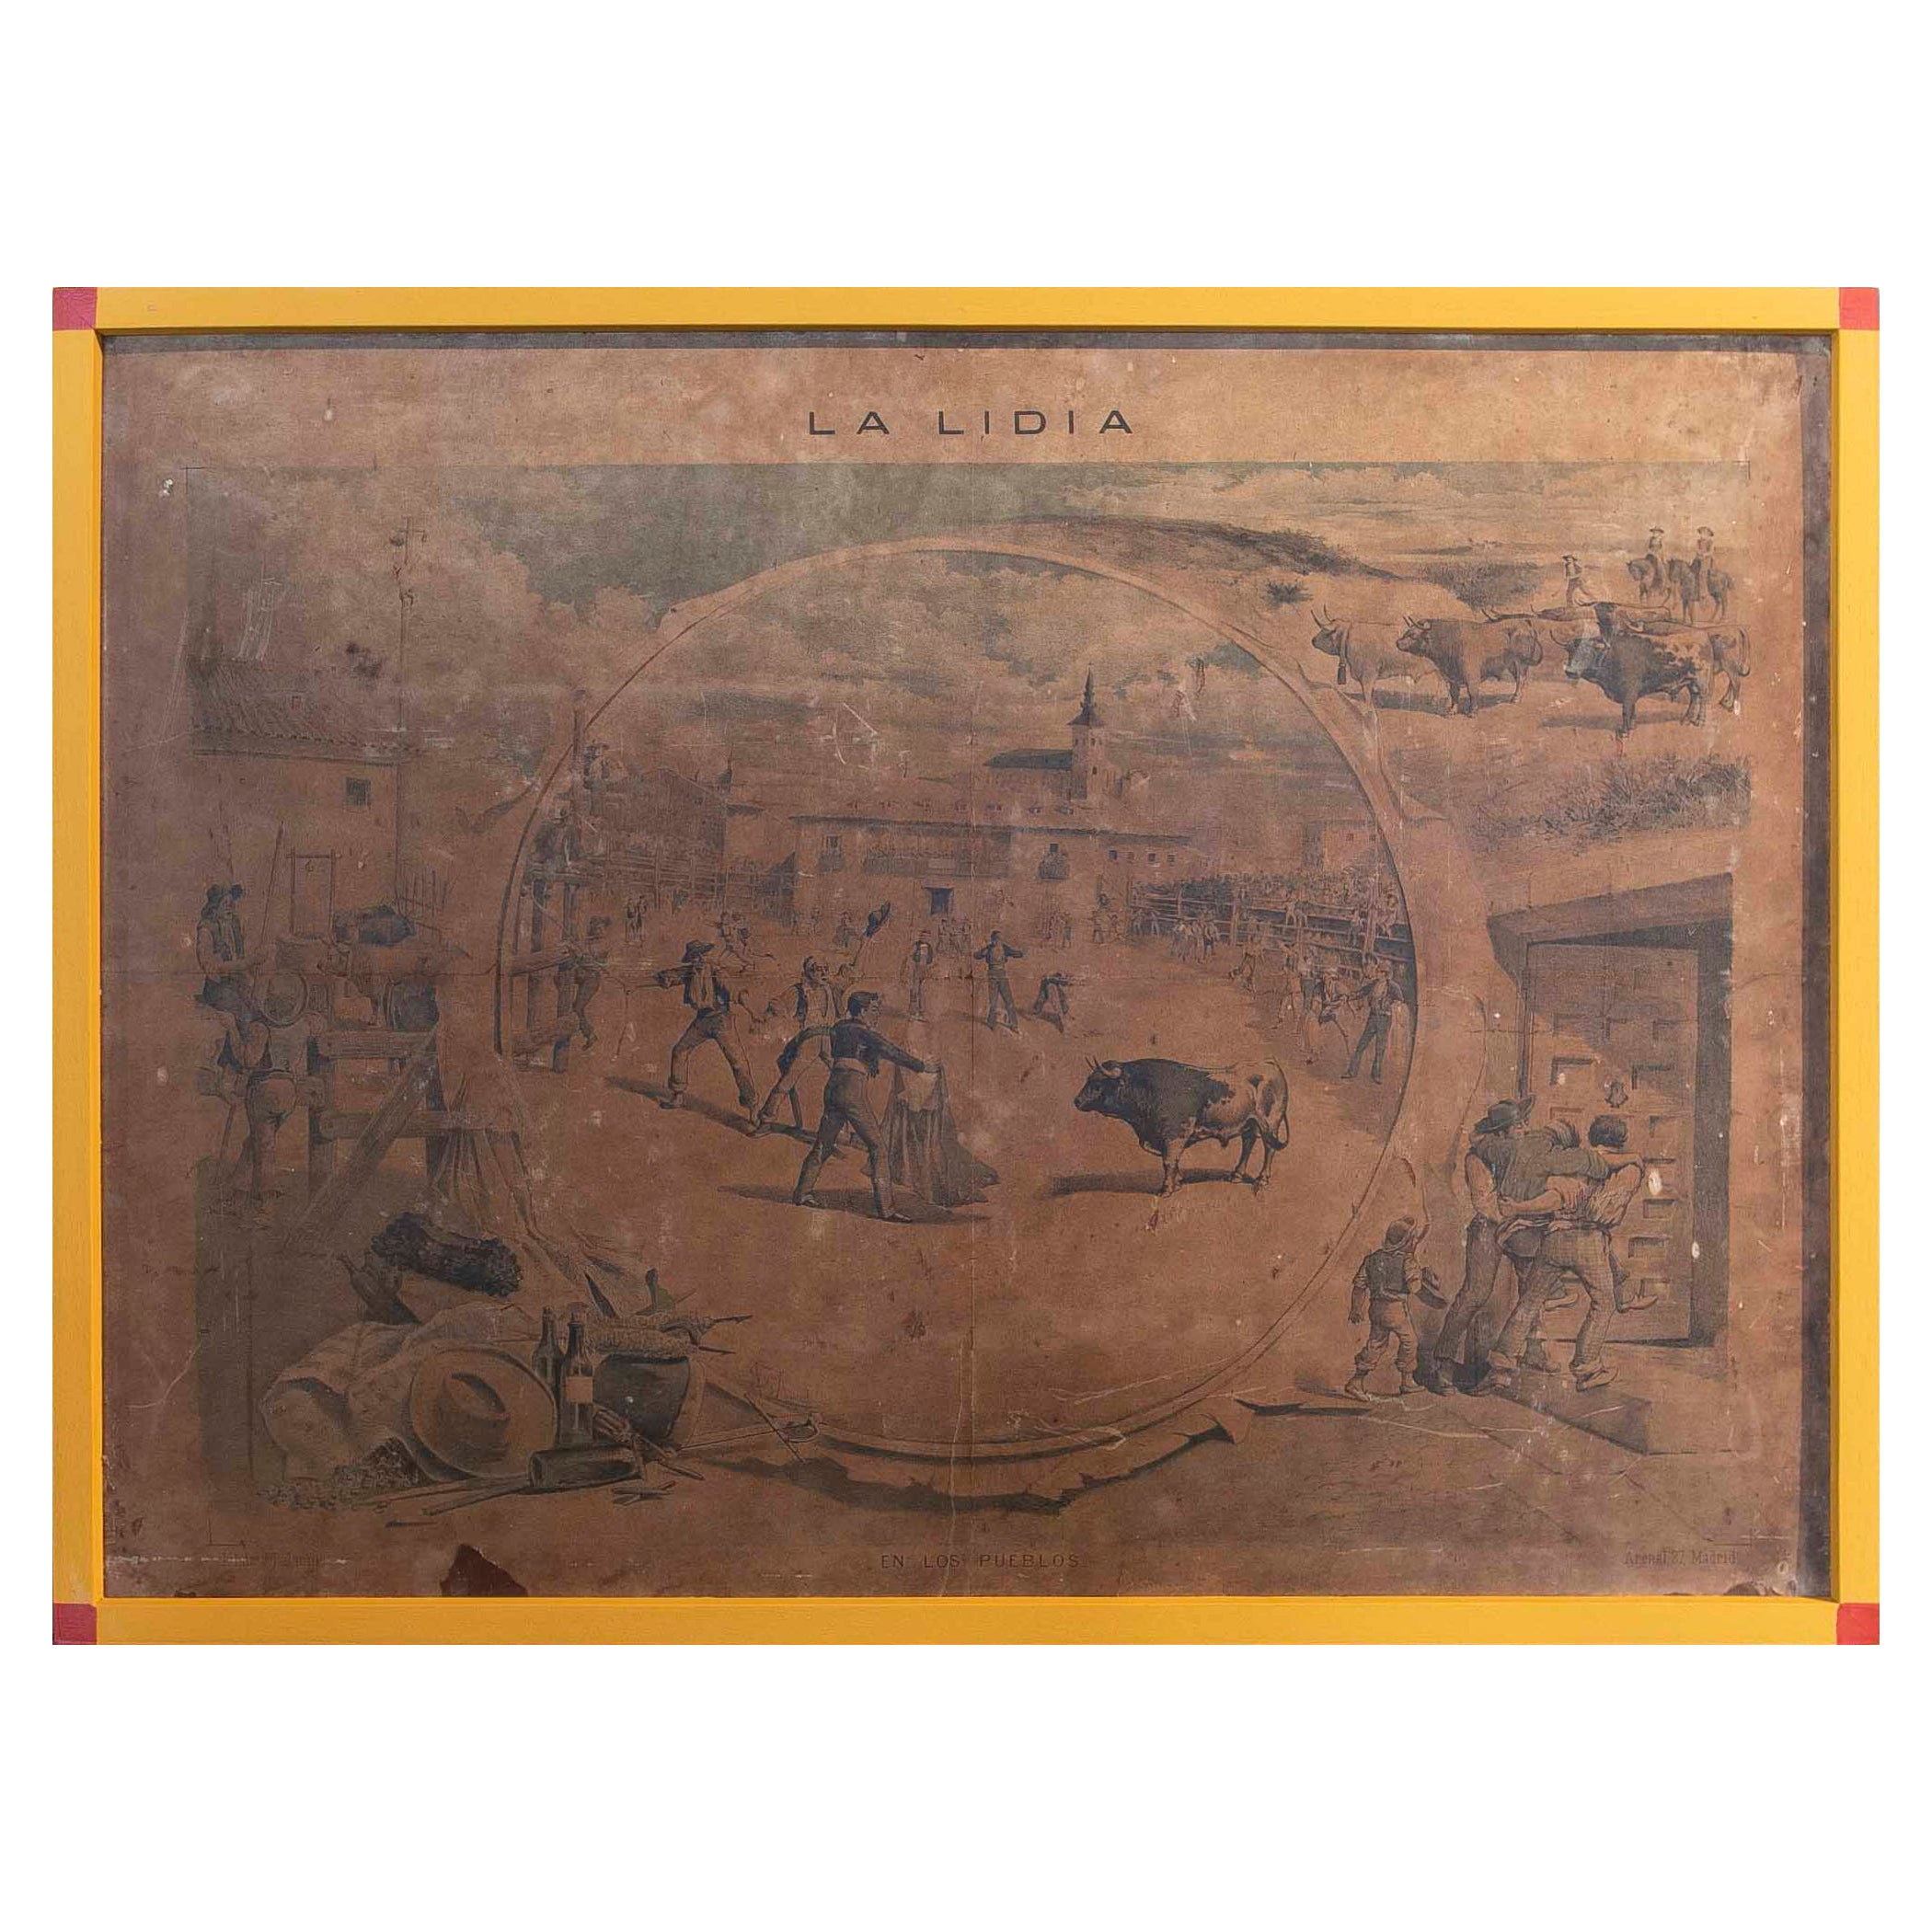 Photo imprimée sur papier du 19ème siècle représentant une scène espagnole avec cadre